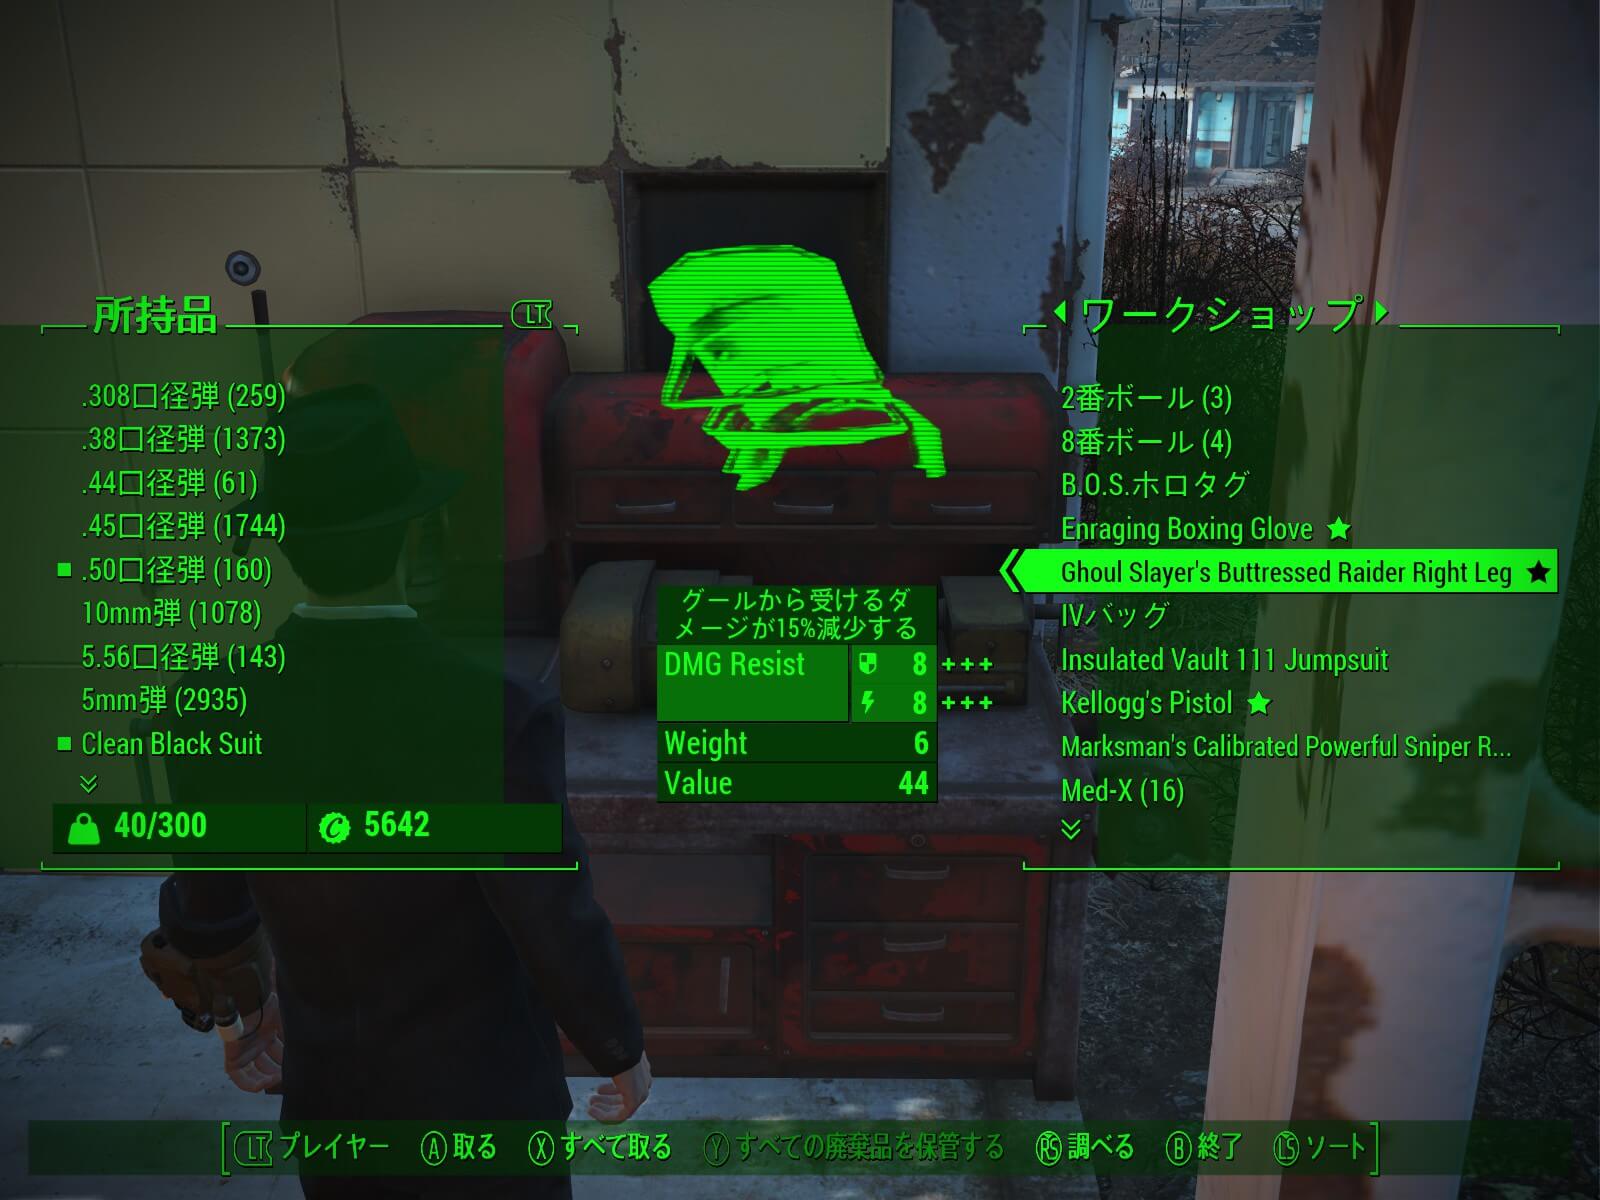 Fallout4 Steamのpc日本語版が酷すぎる 配信遅れ 古いexeバージョン 未翻訳などでやらかしている模様 ねこくまぶろぐ